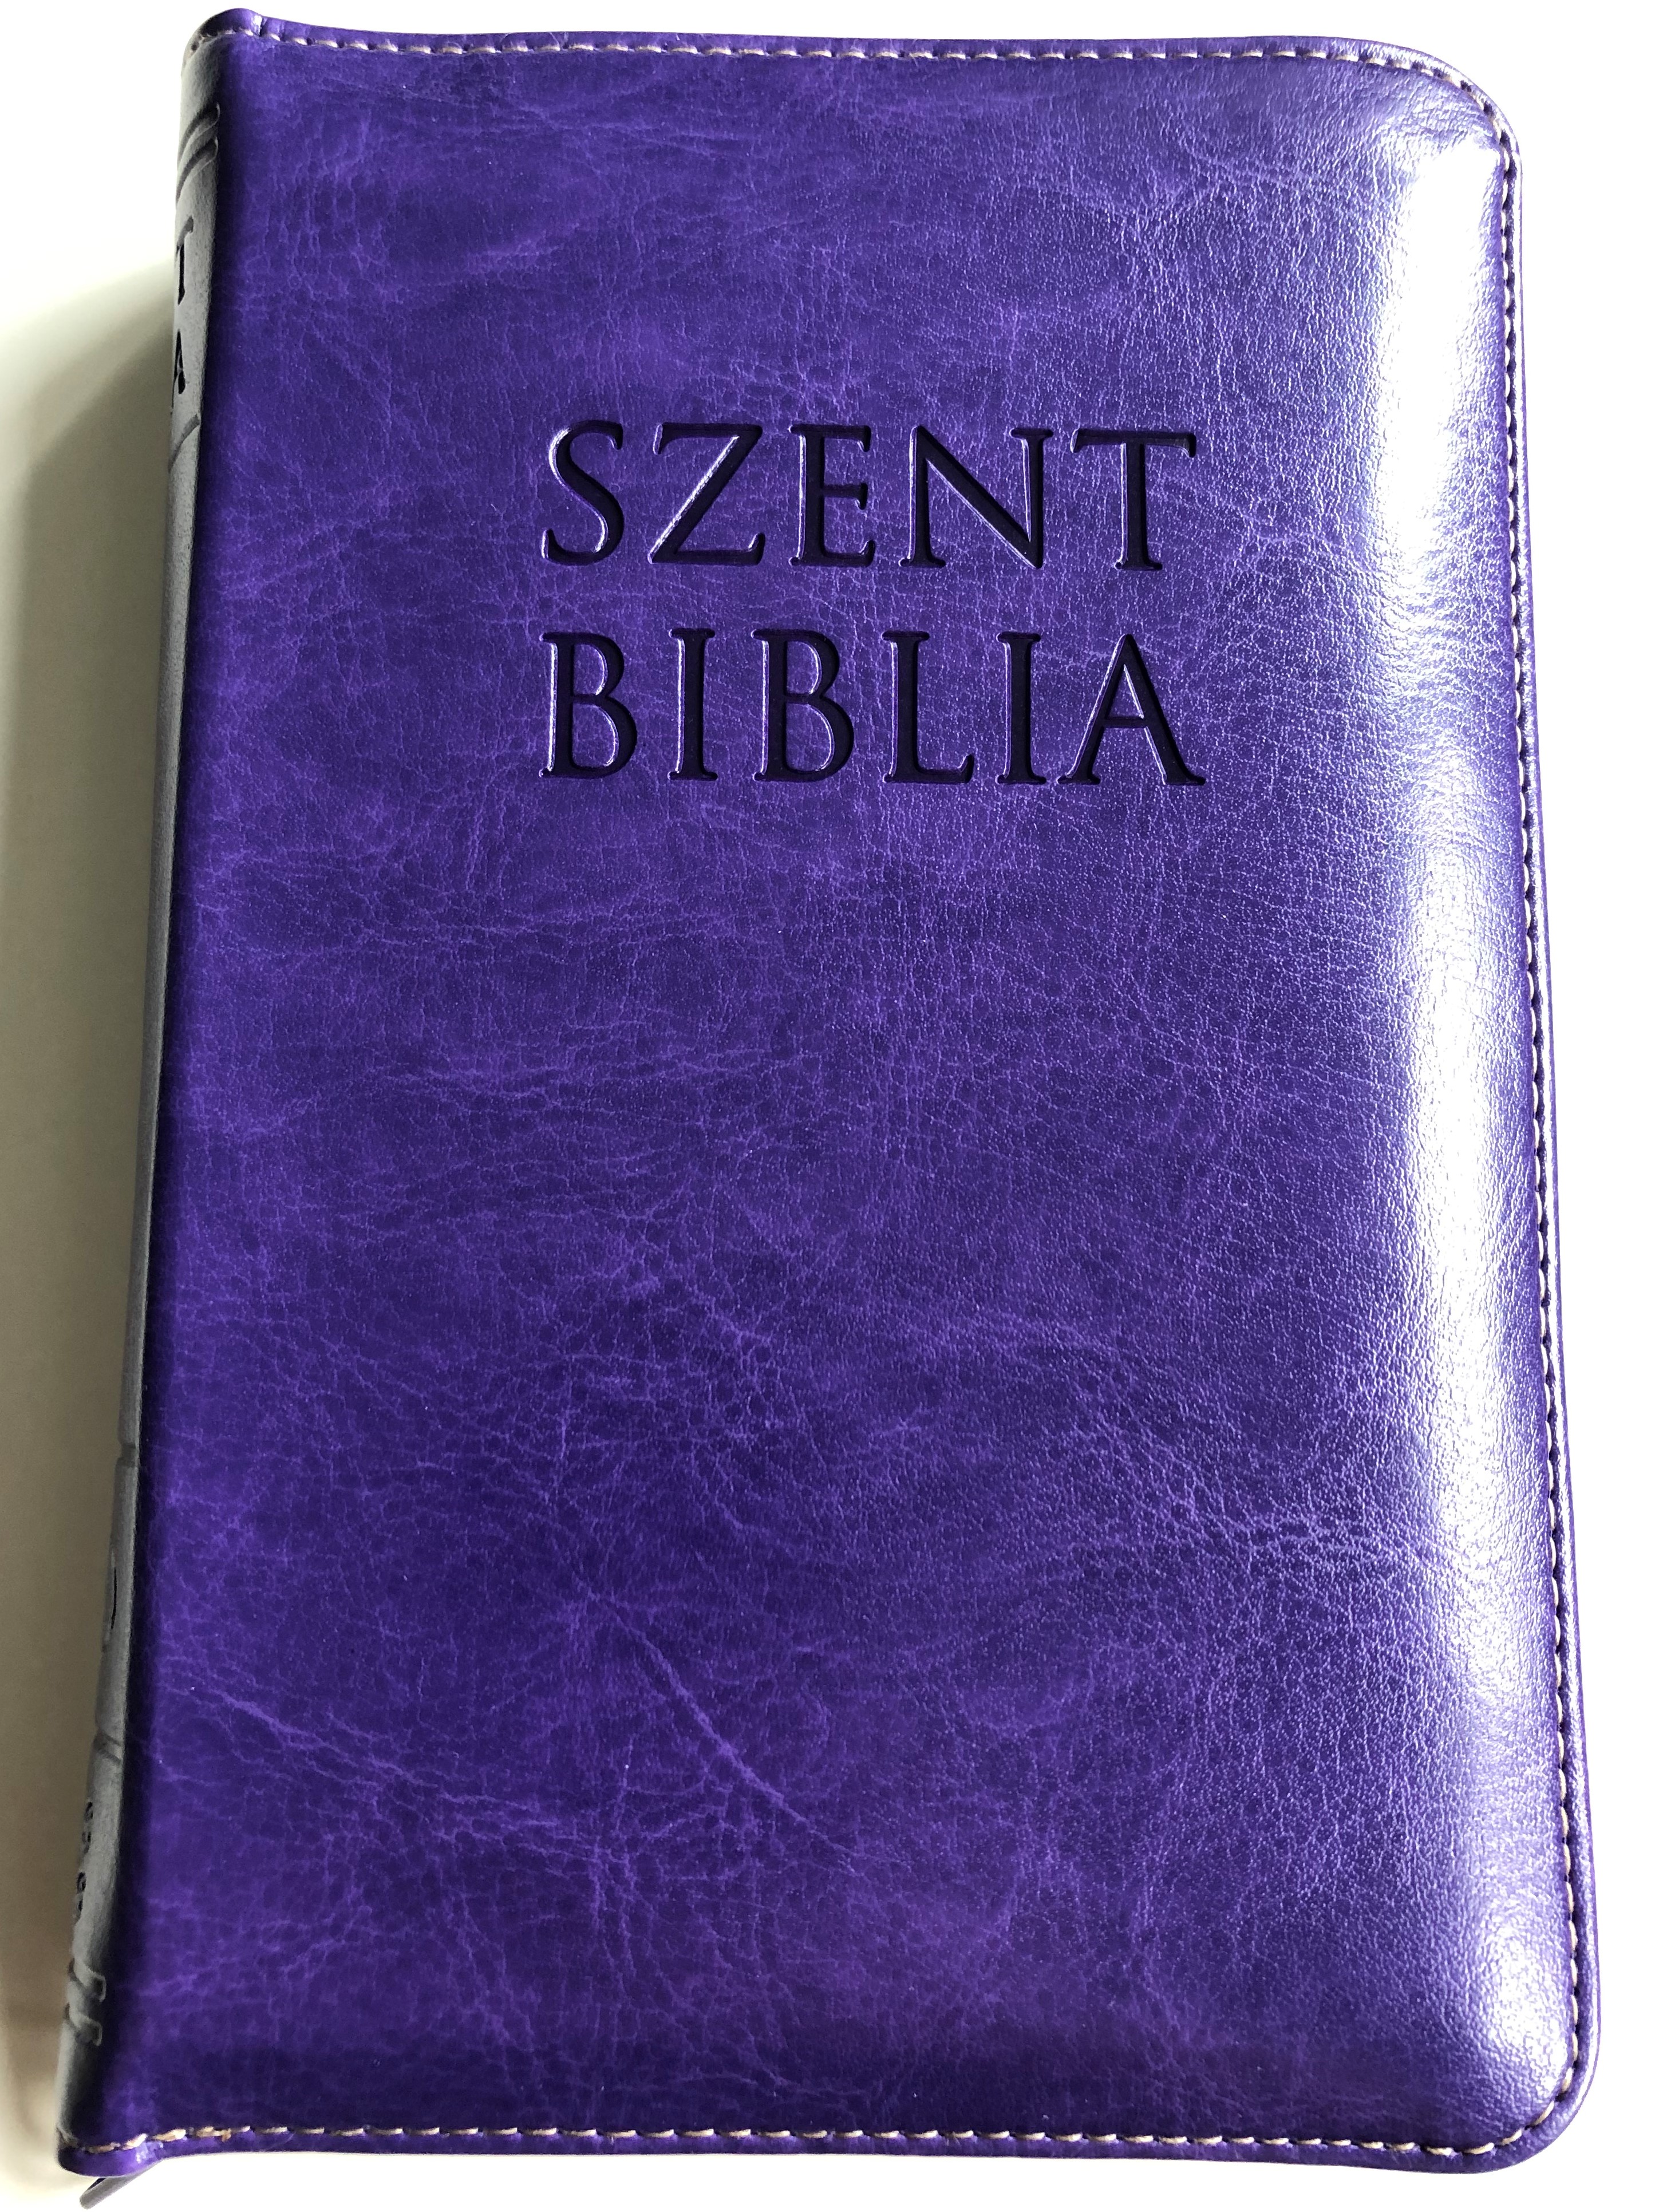 holy-bible-szent-biblia-lila-k-roli-g-sp-r-small-size-imitation-leather-with-zipper-1.jpg